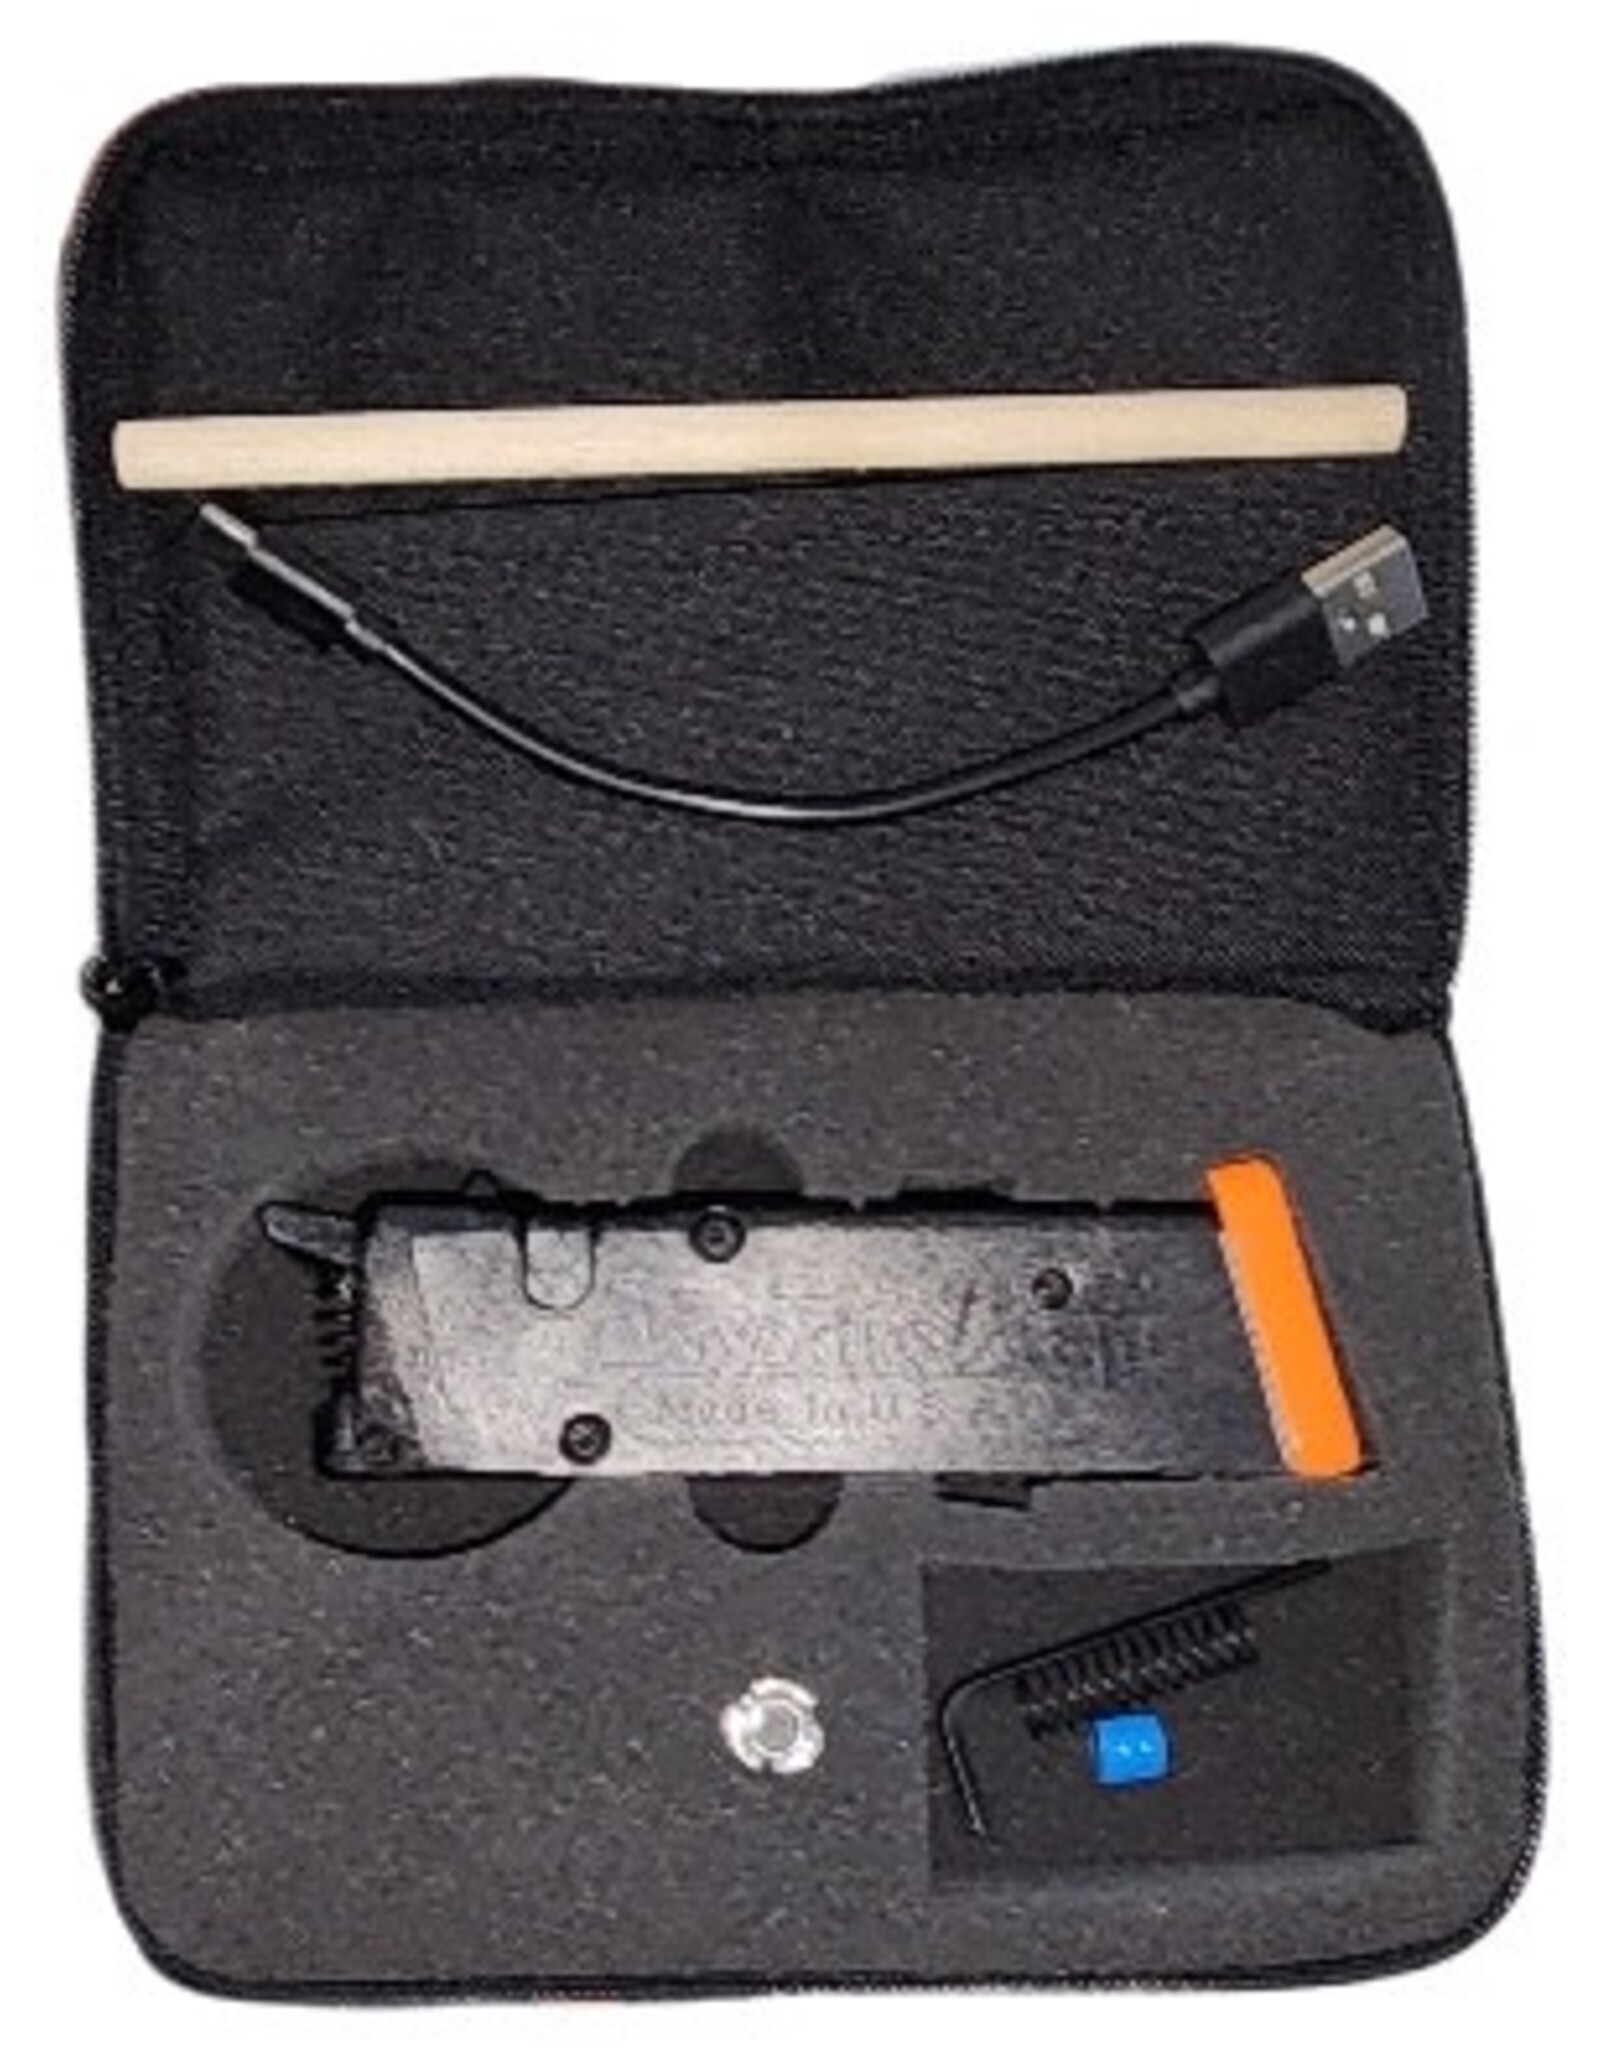 DryFireMag Smart DryFireMag w/red laser and spring kit Glock